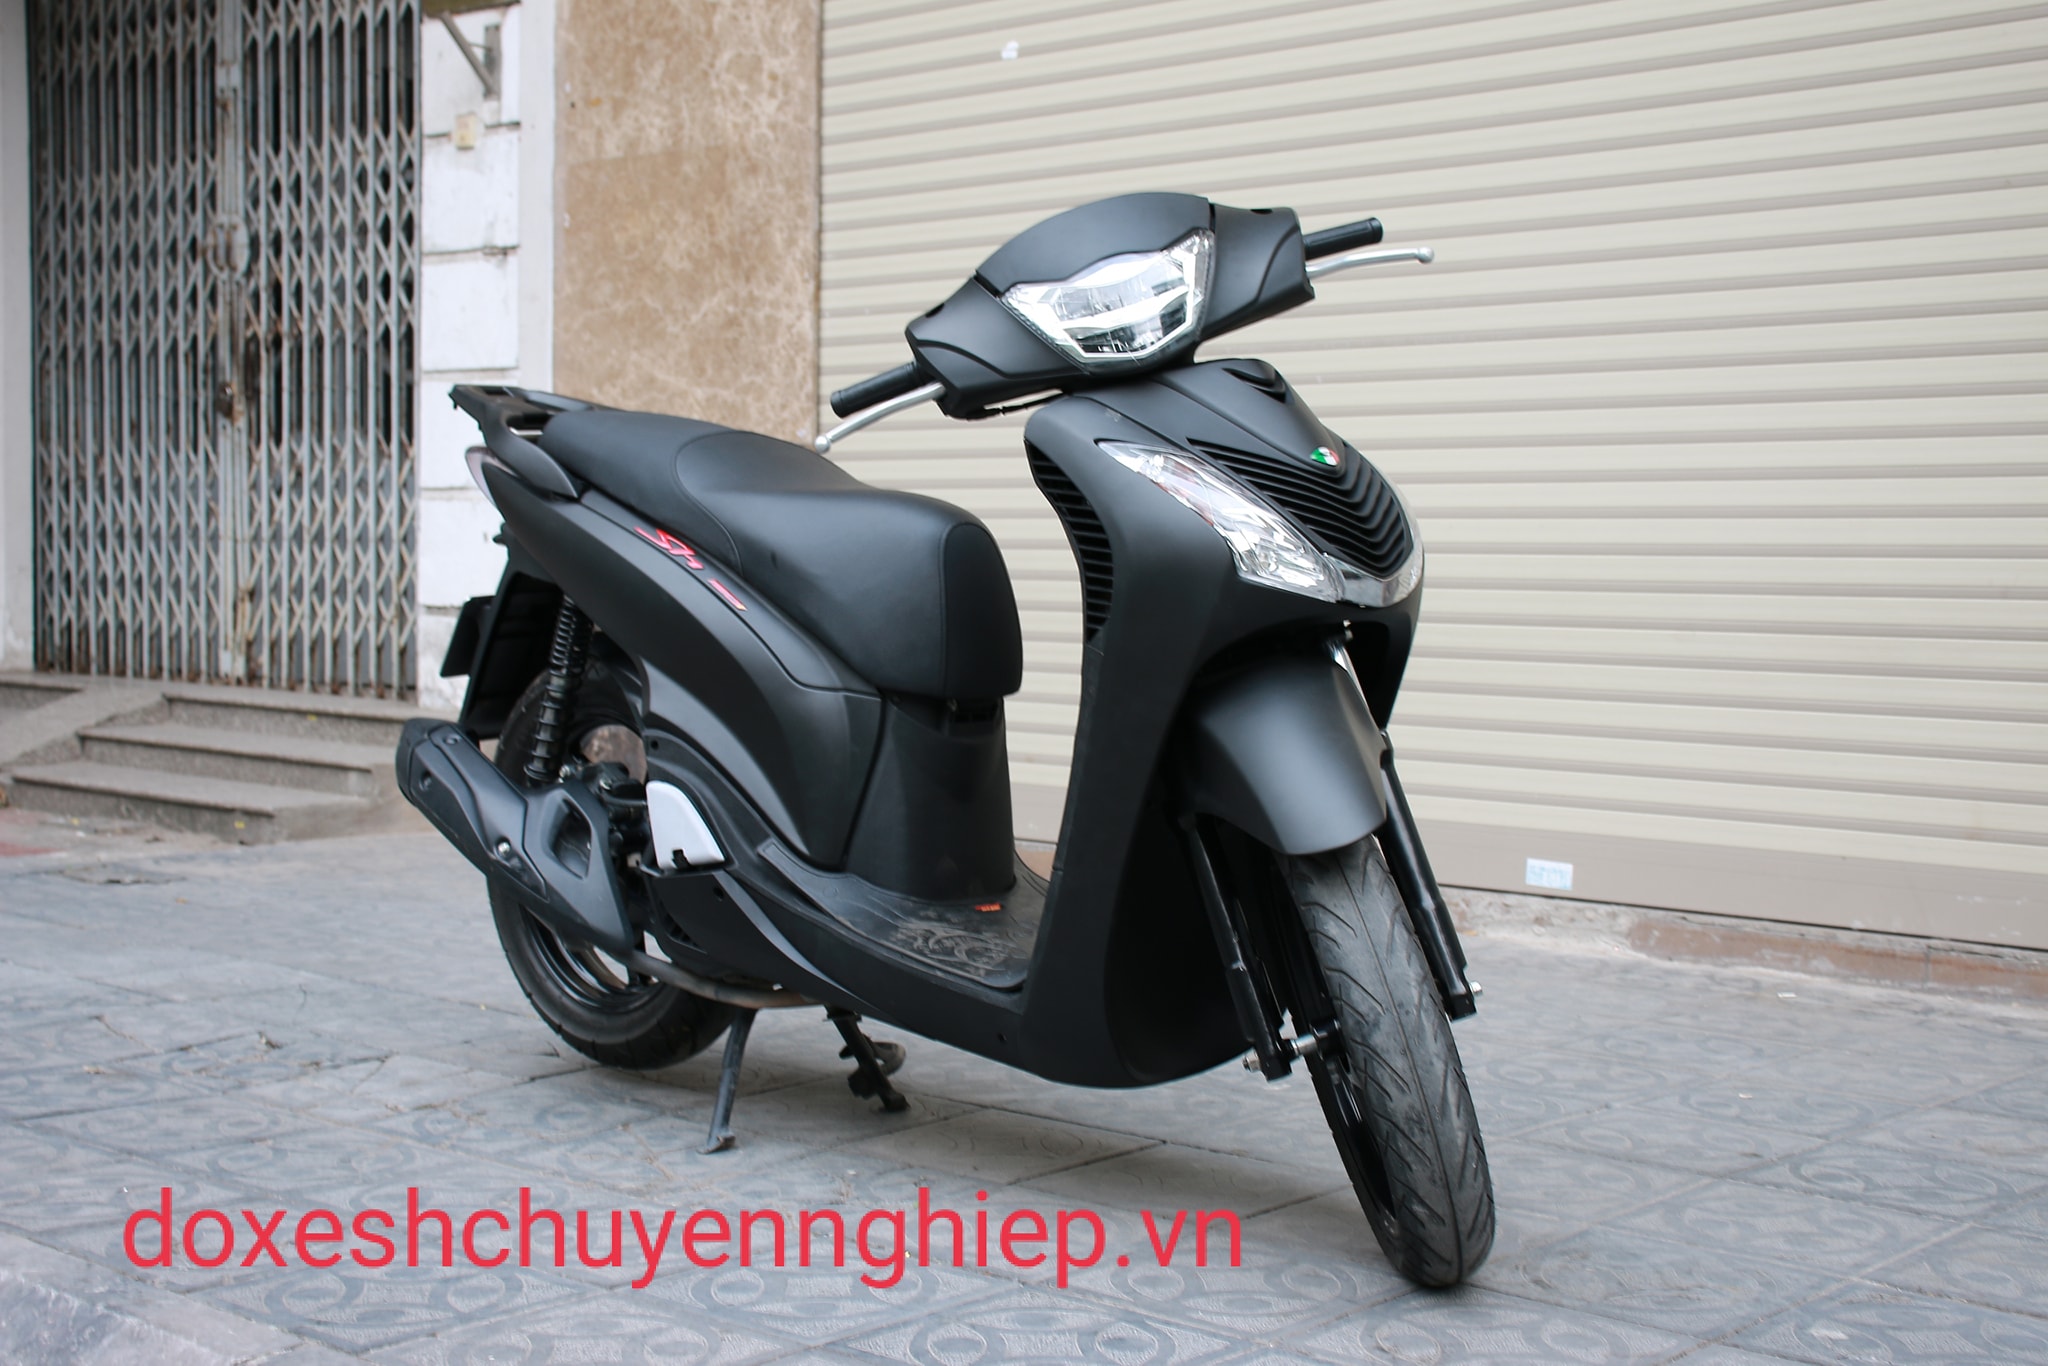 Dàn áo Sh kiểu Ý mẫu Vx gắn cho Sh Việt 20122016  44881637